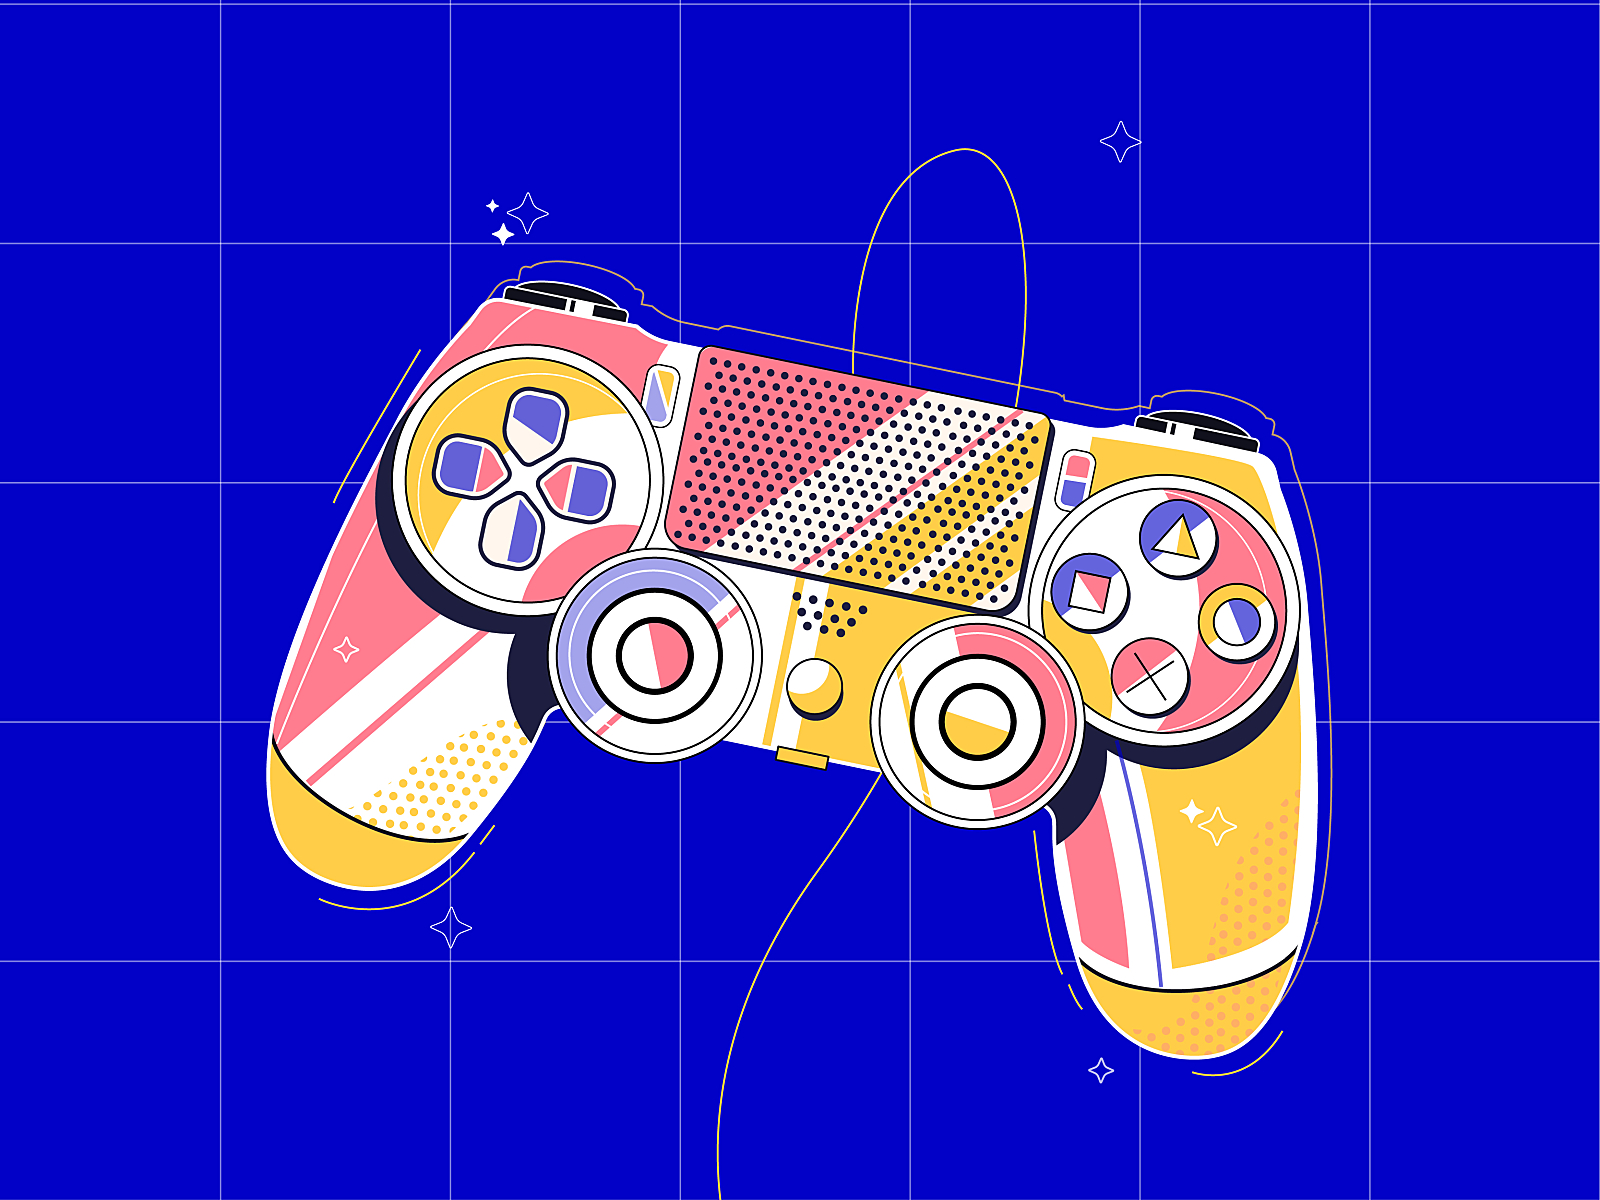 Game controller colors controller design game gaming illustration illustration art illustration design vector